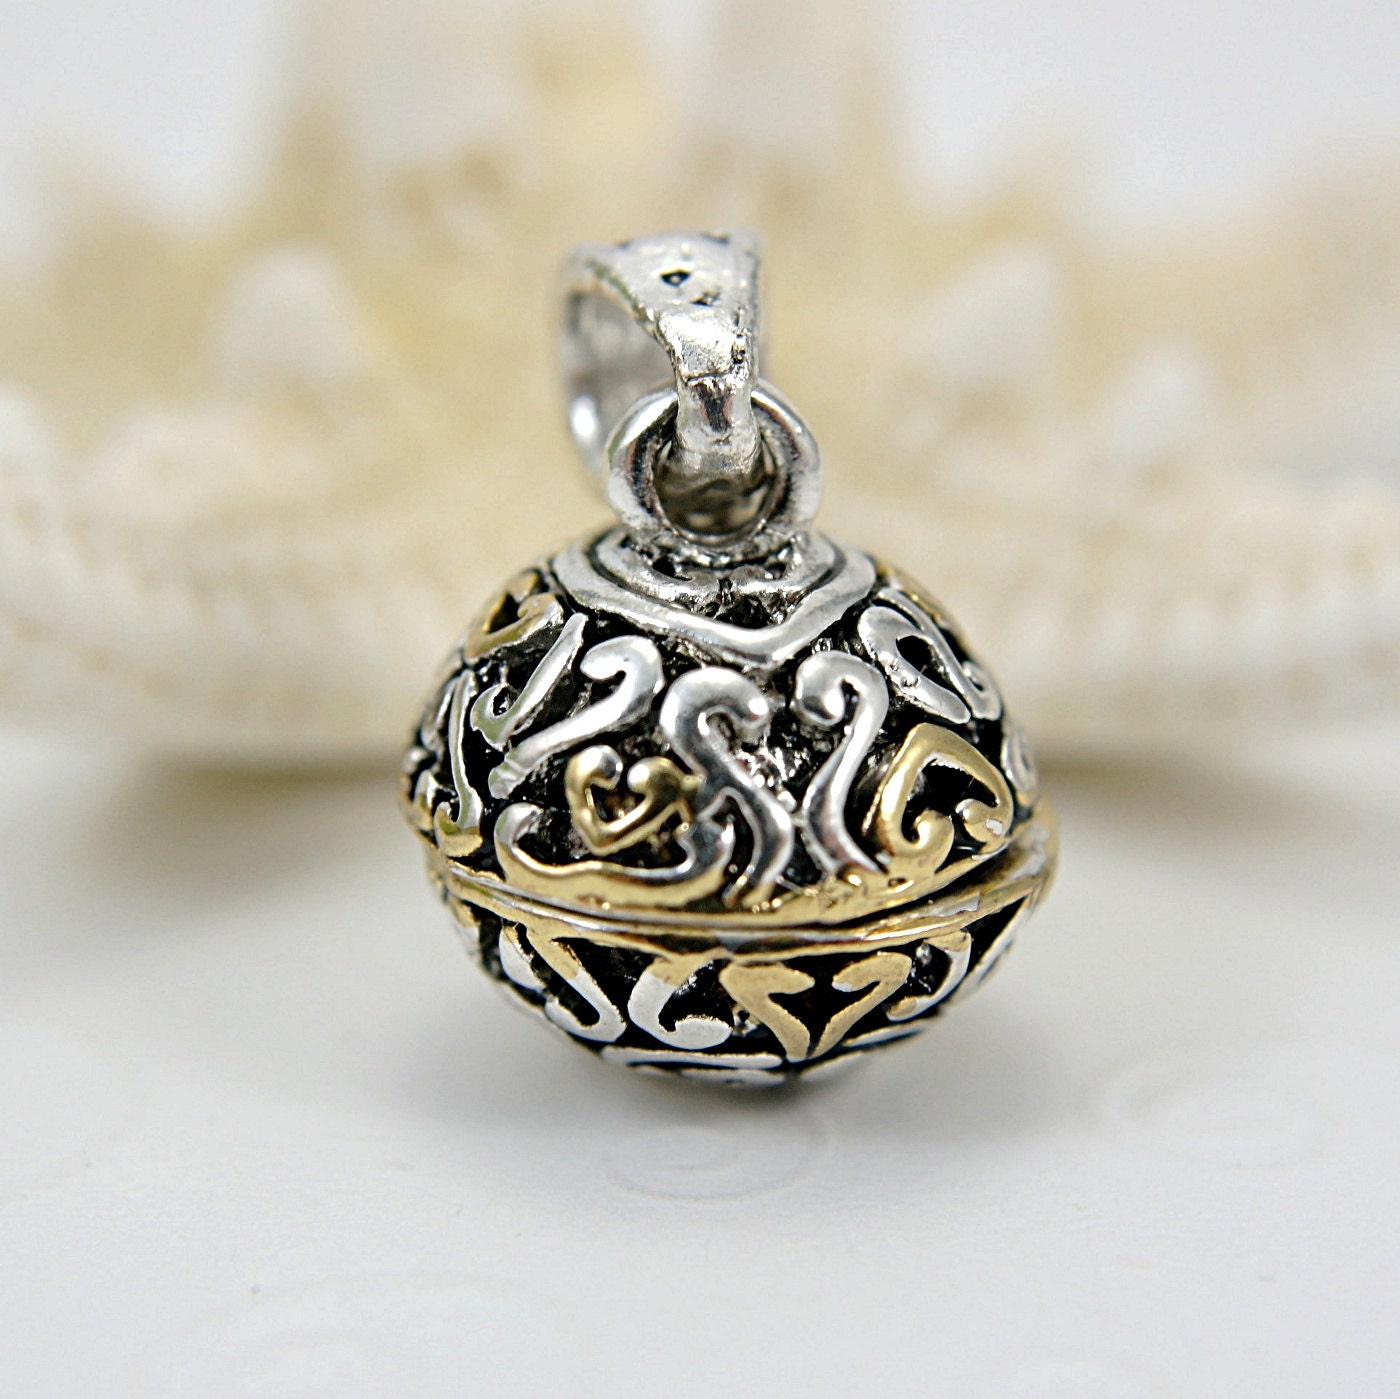 Prayer box sphere pendant ornament filigree silver gold tone - SueRunyonDesigns